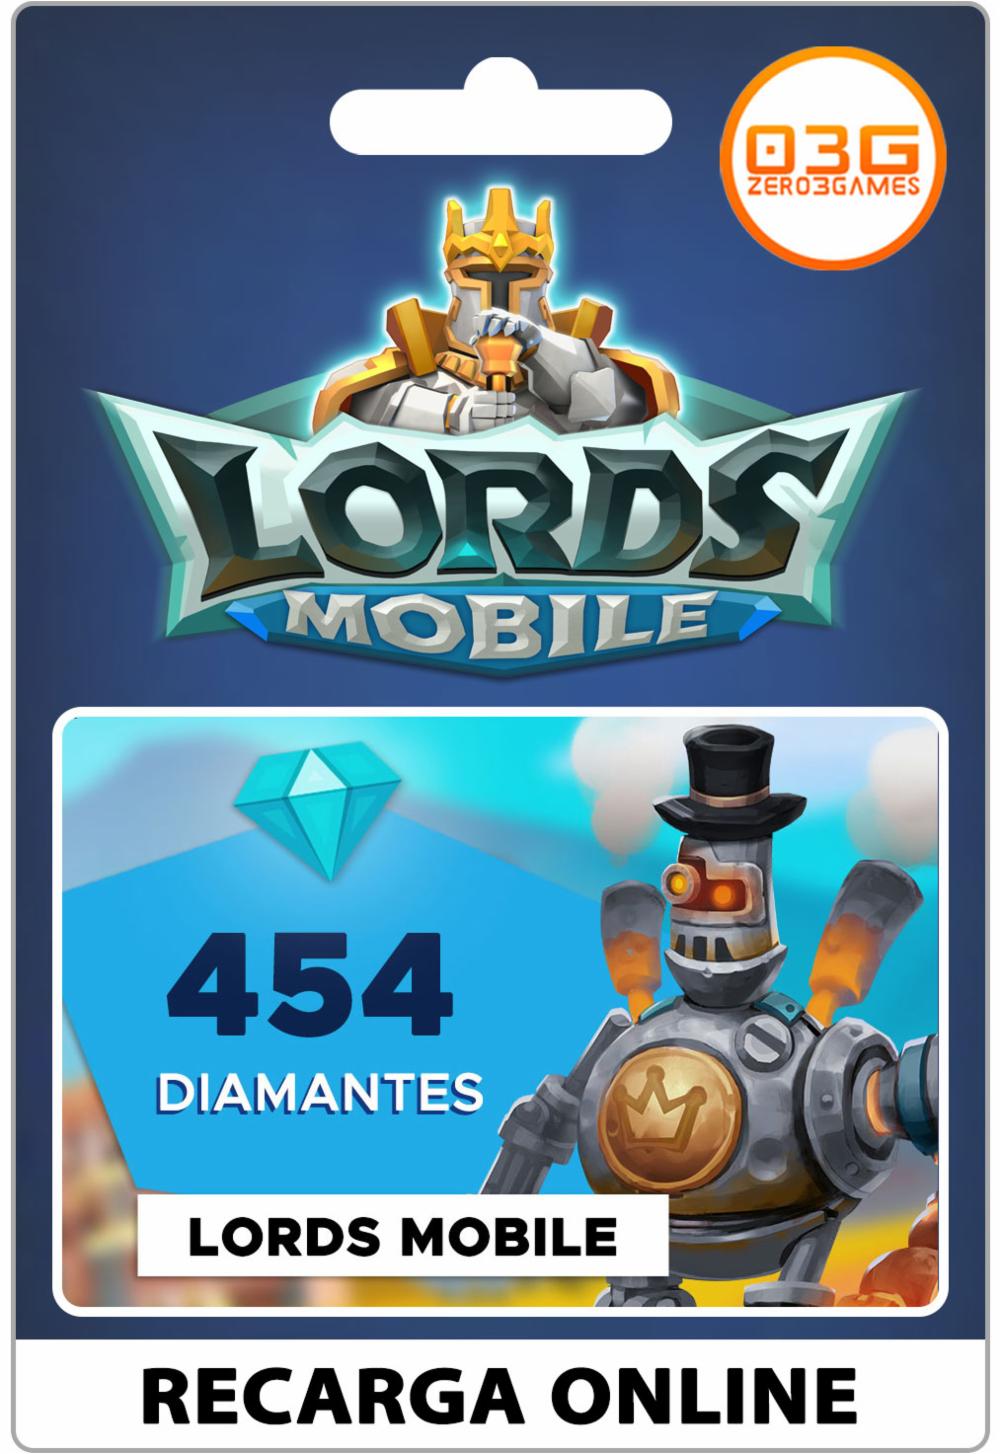 Recarga de diamantes Lords Mobile